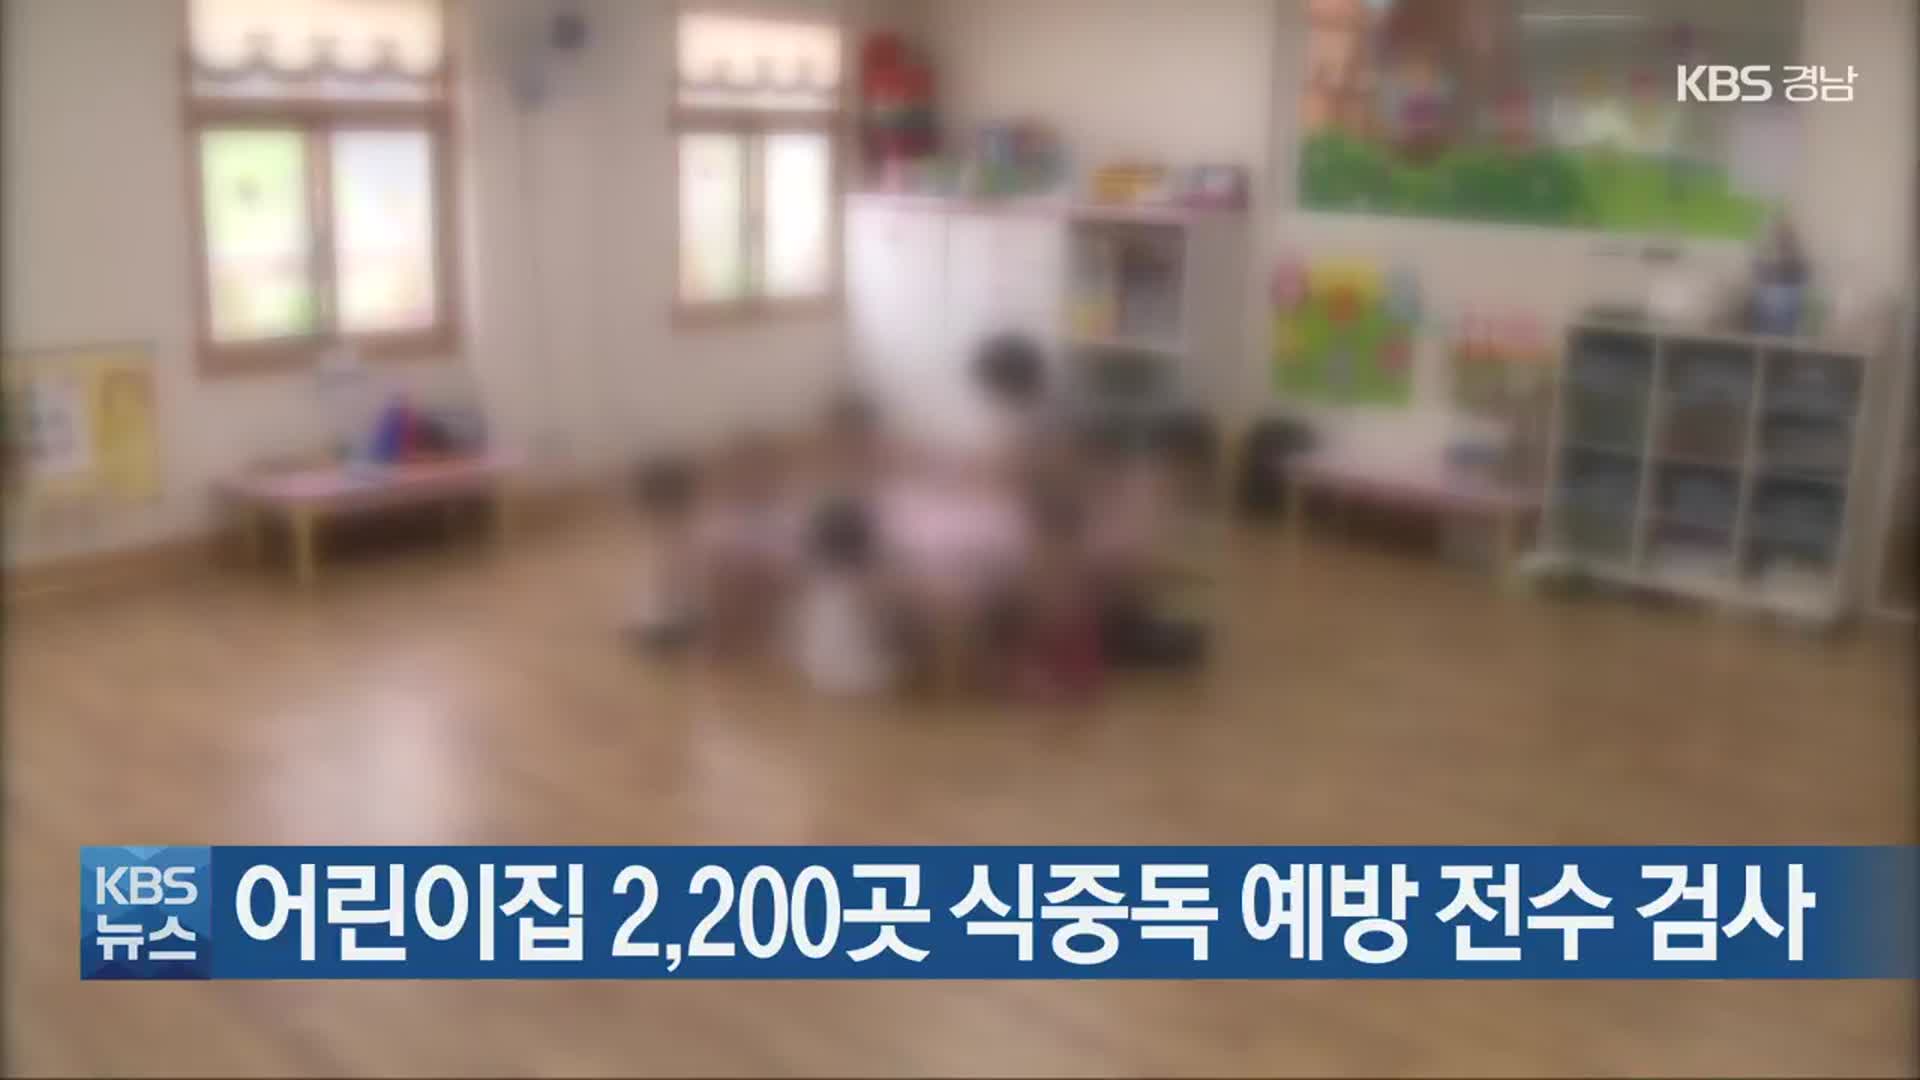 어린이집 2,200곳 식중독 예방 전수 검사